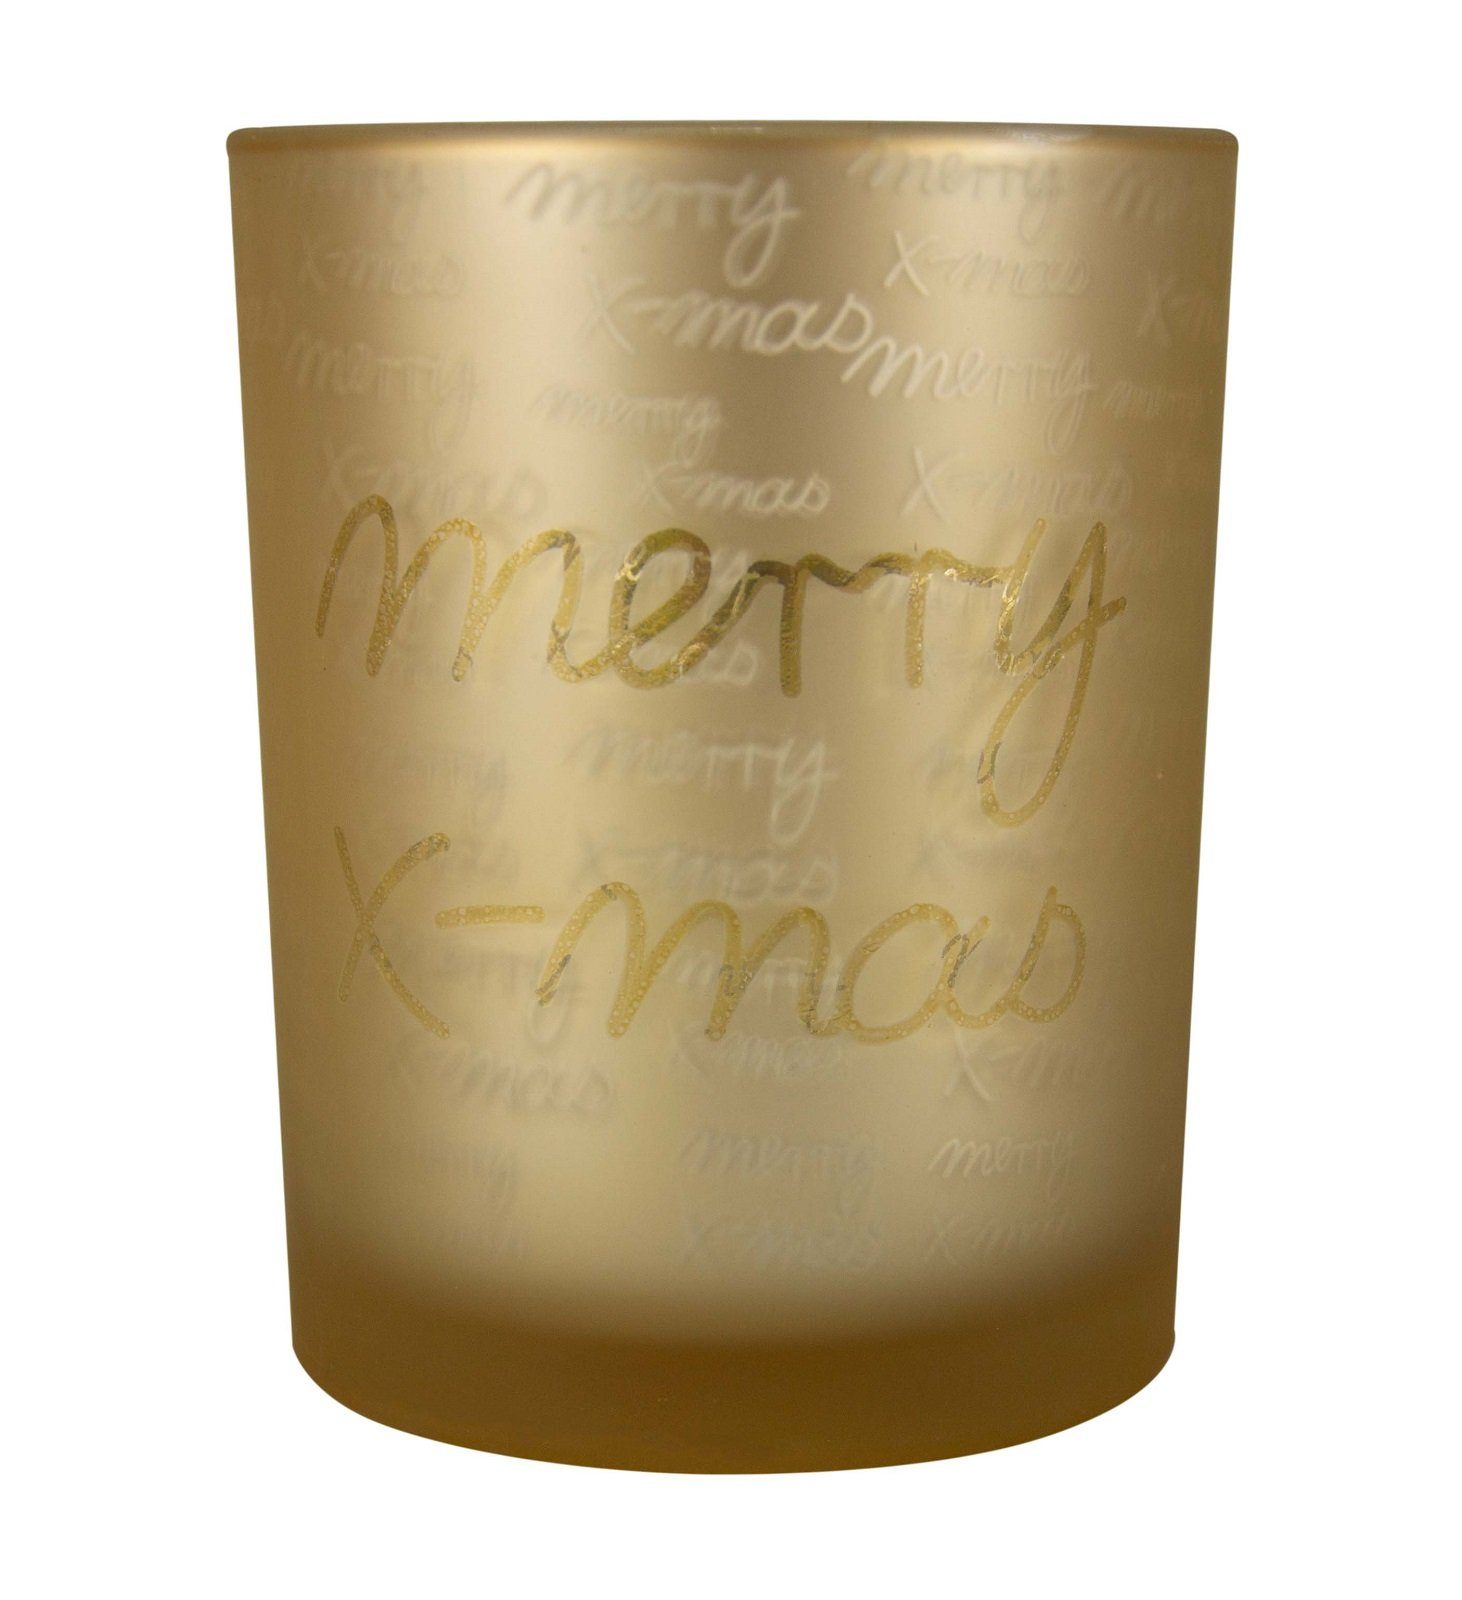 Parts4Living Windlicht Glas Teelichthalter "Merry X-Mas" Teelichtglas Kerzenhalter mit weihnachtlicher Schrift gold 7,3x8 cm, im romantischen Stil